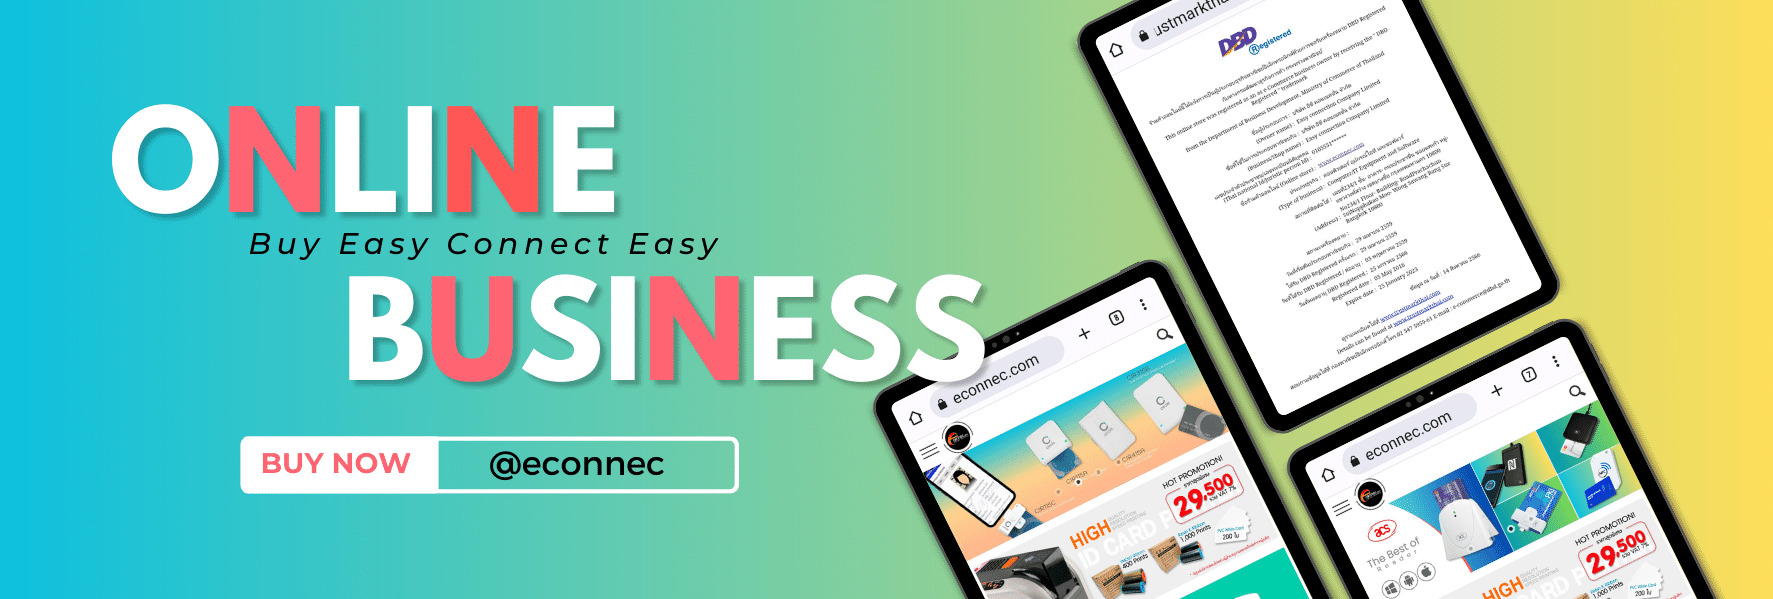 Econnec Online Business 